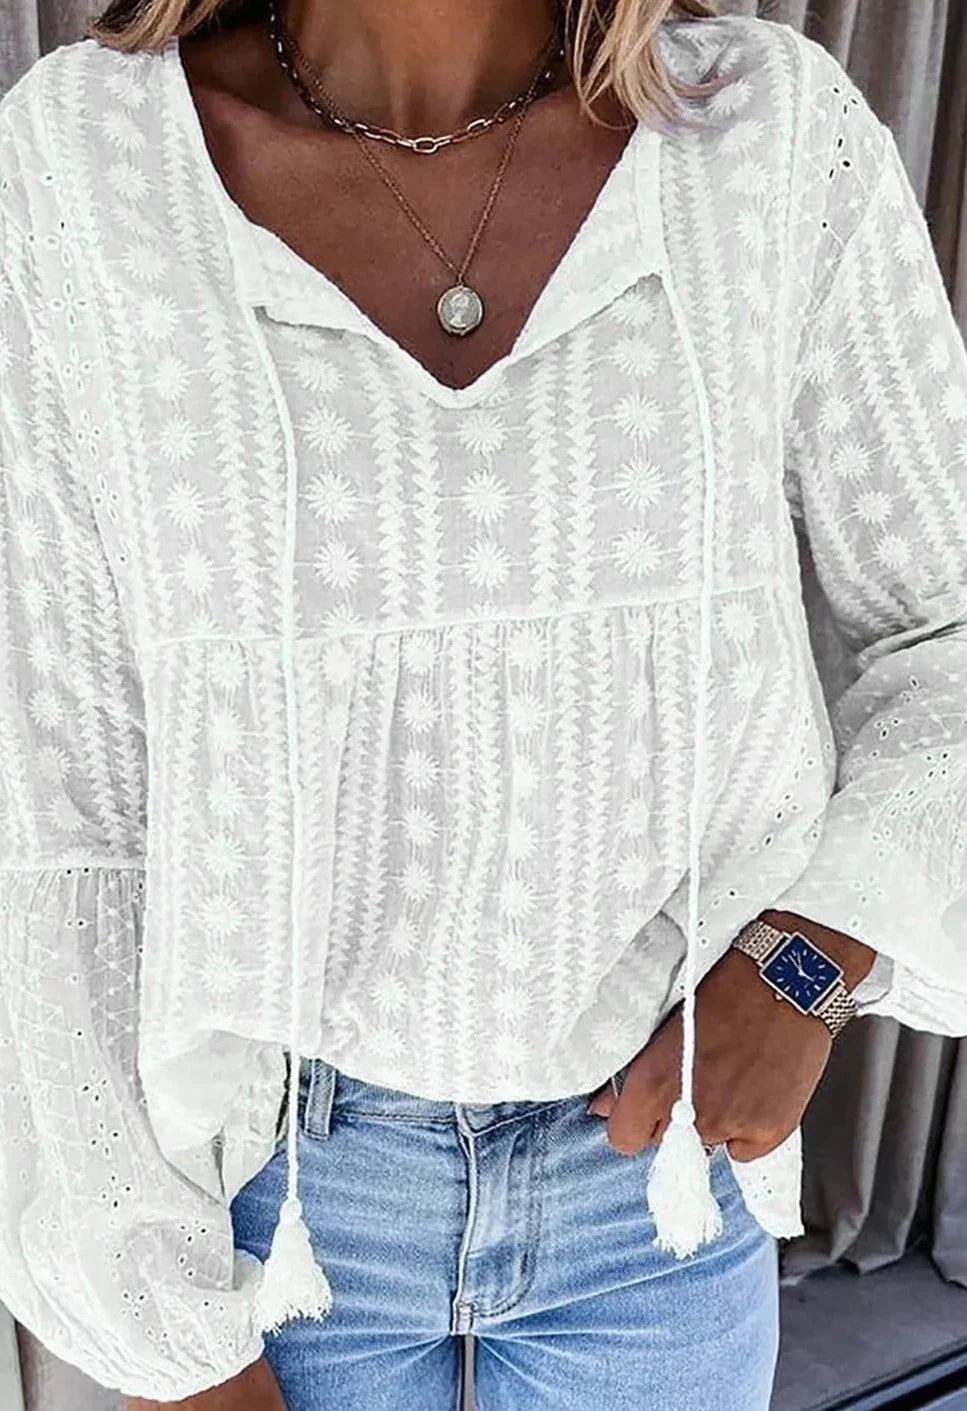 TINA - The elegant and unique blouse